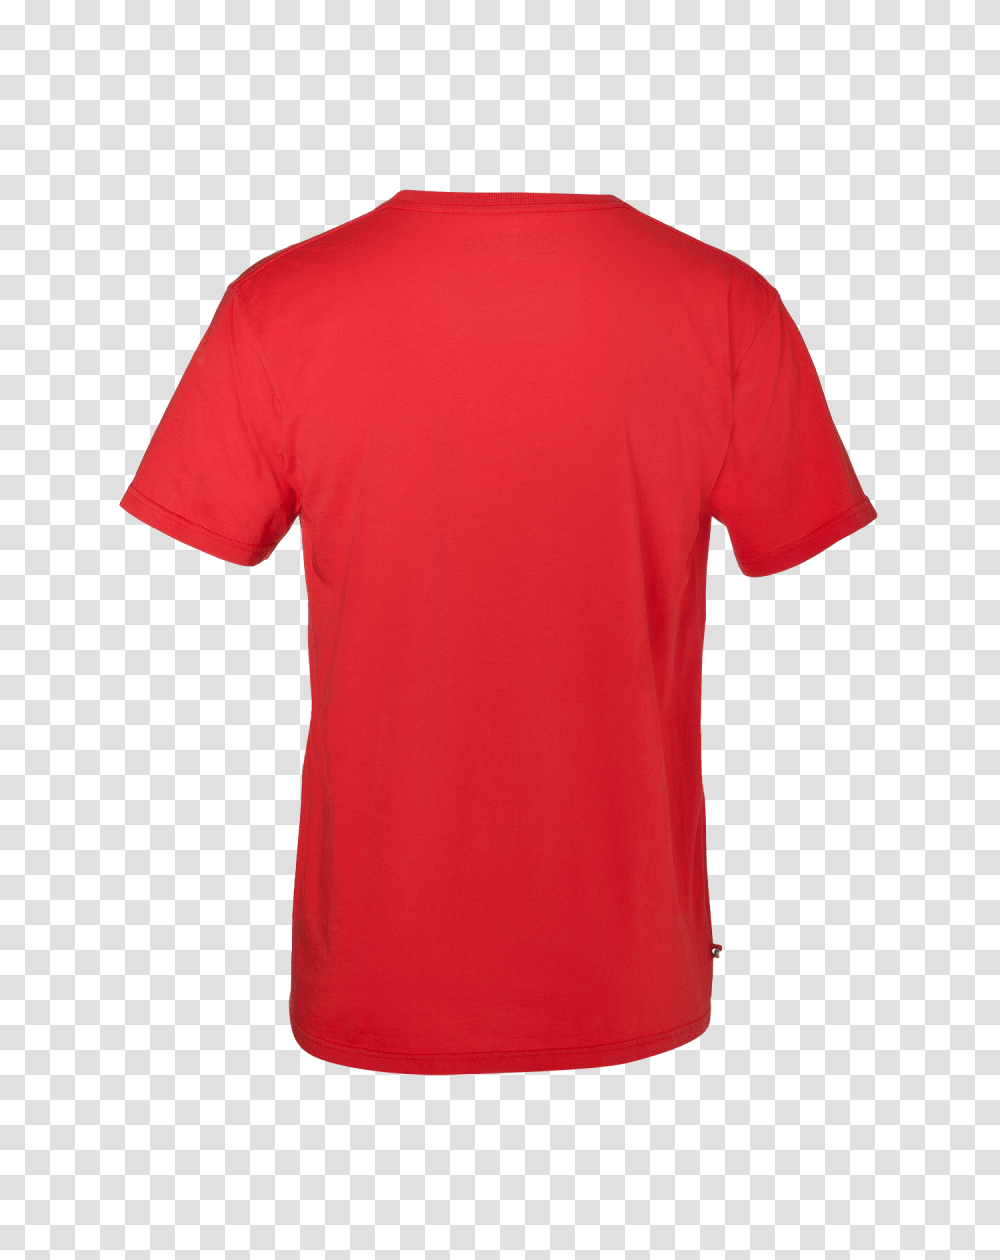 Teespring T Shirt And Clip Art, Apparel, T-Shirt Transparent Png